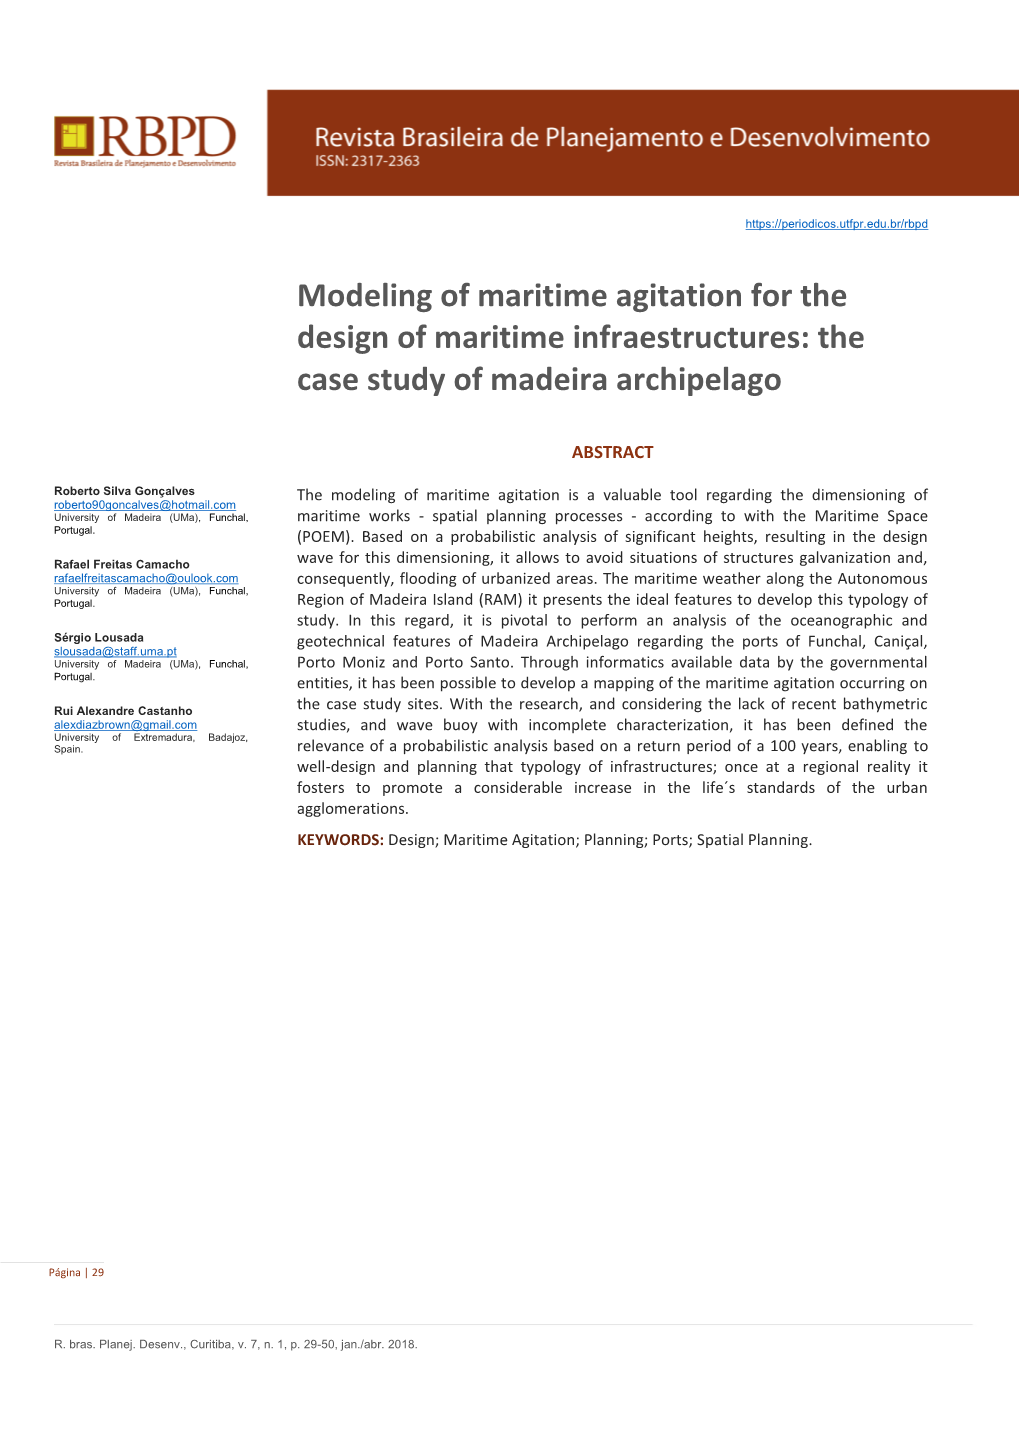 The Case Study of Madeira Archipelago